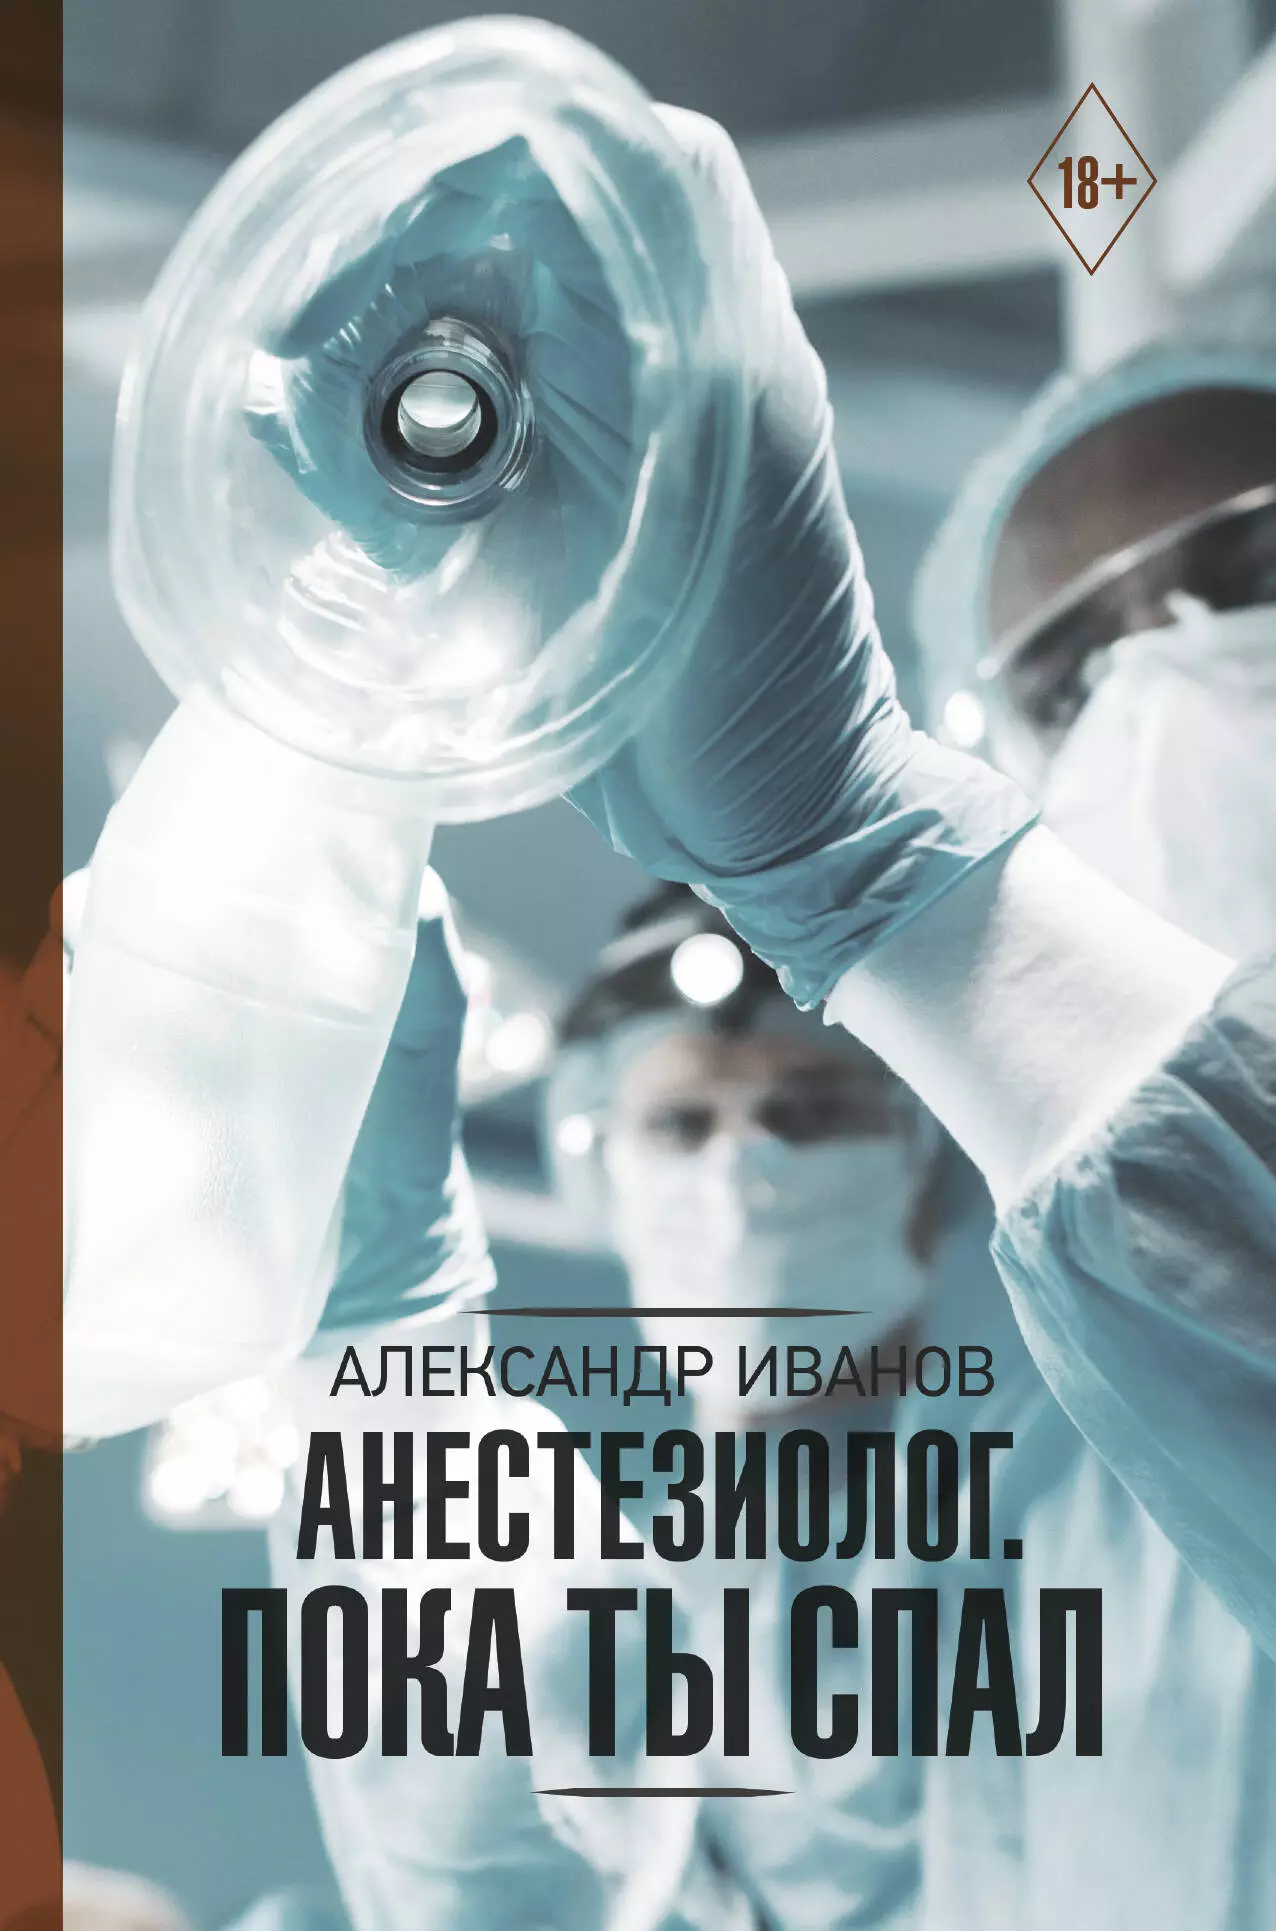 Иванов Александр Евгеньевич - Анестезиолог. Пока ты спал